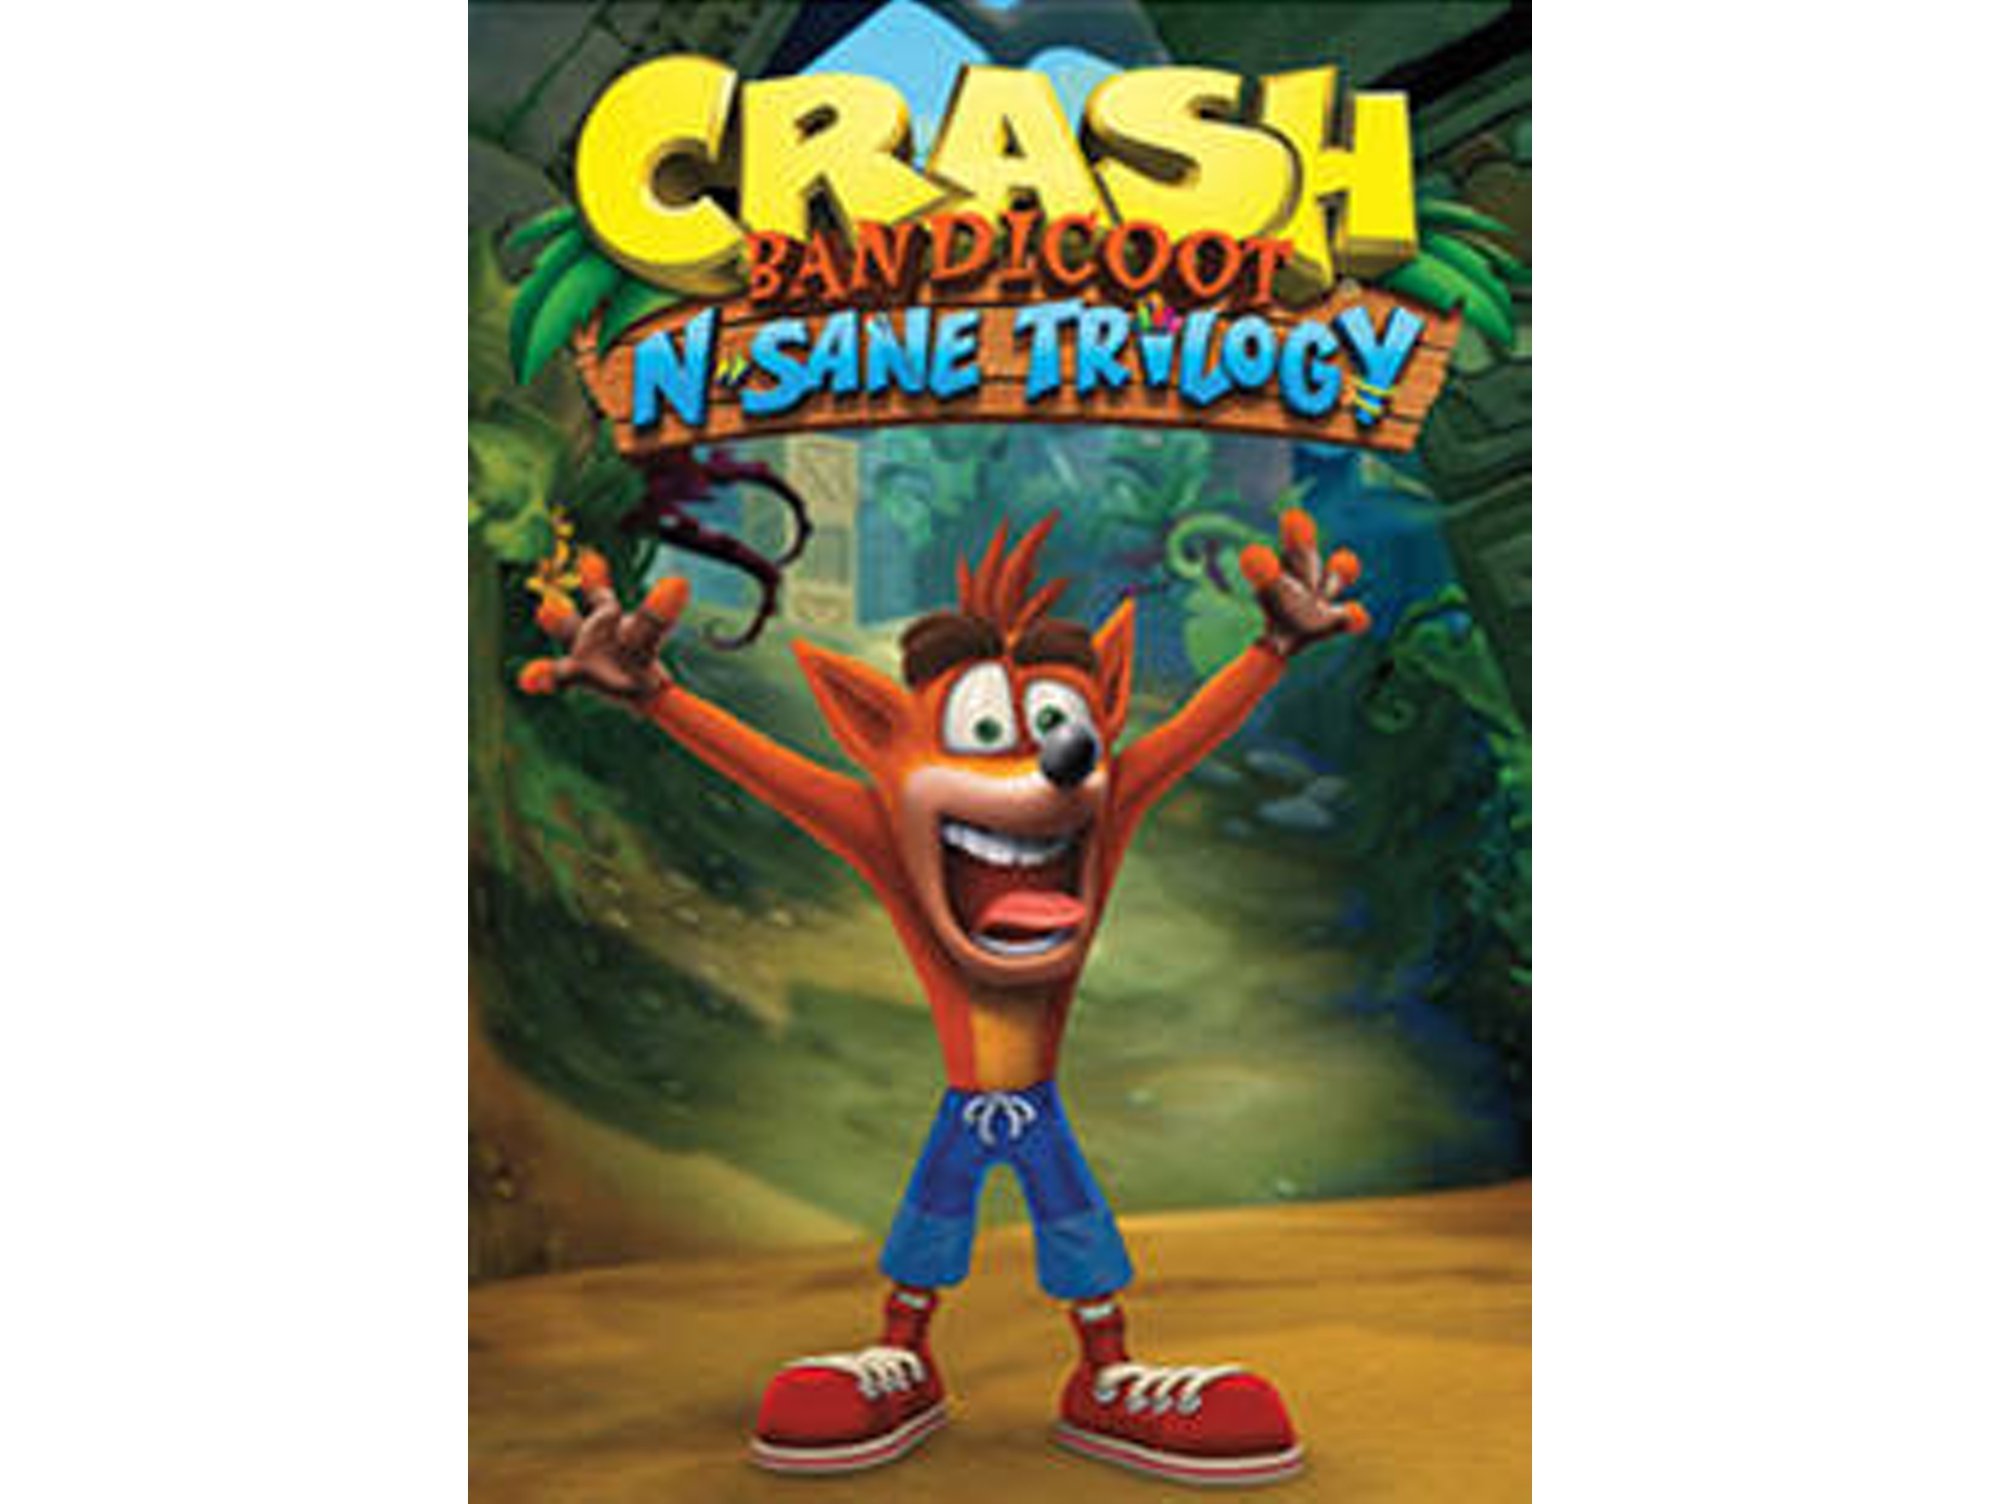  Crash Bandicoot N.Sane Trilogy (PS4) : Videojuegos